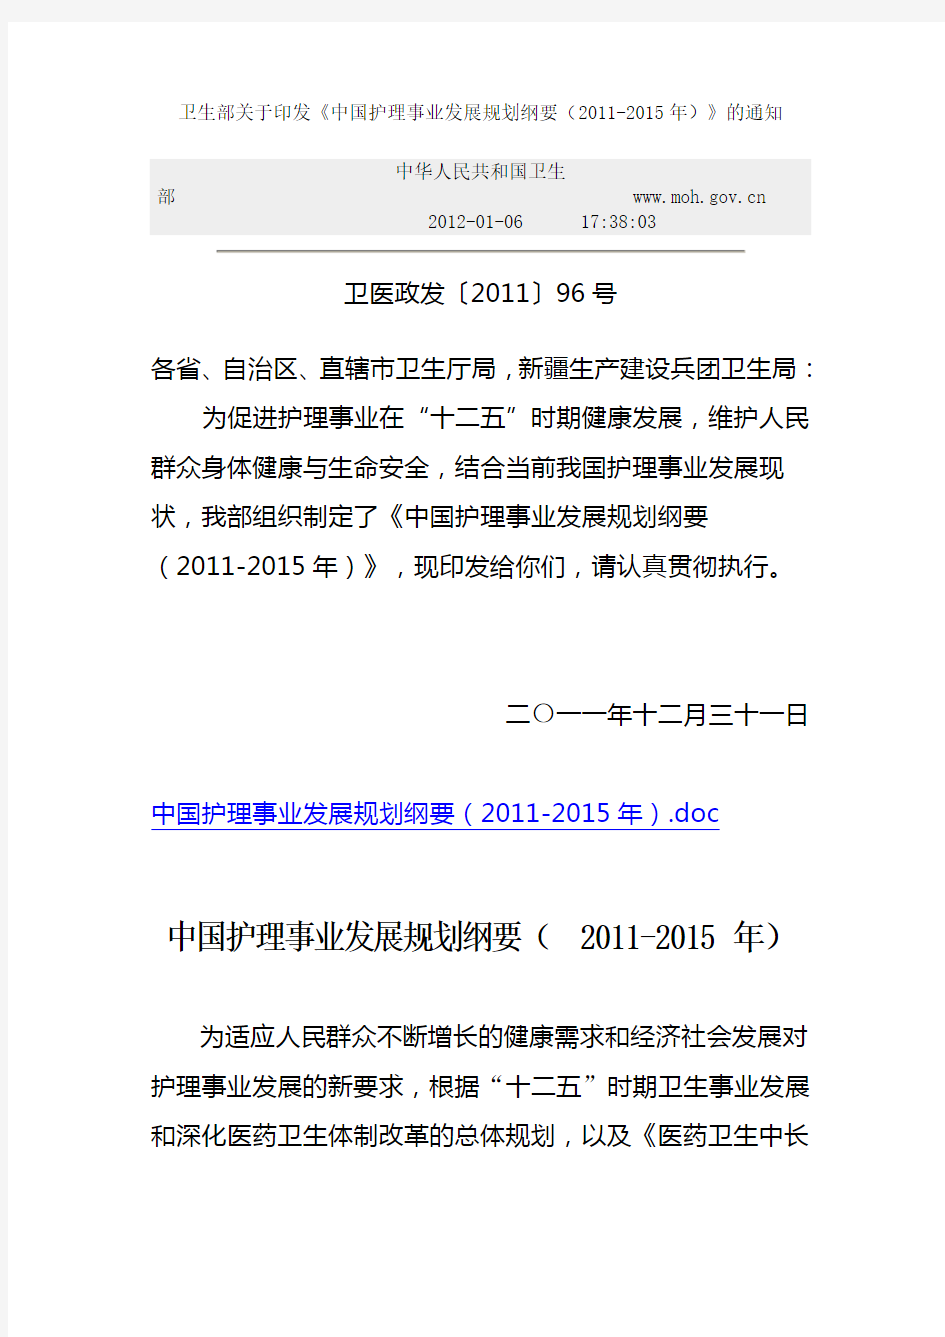 卫生部关于印发《中国护理事业发展规划纲要(2011-2015年)》的通知